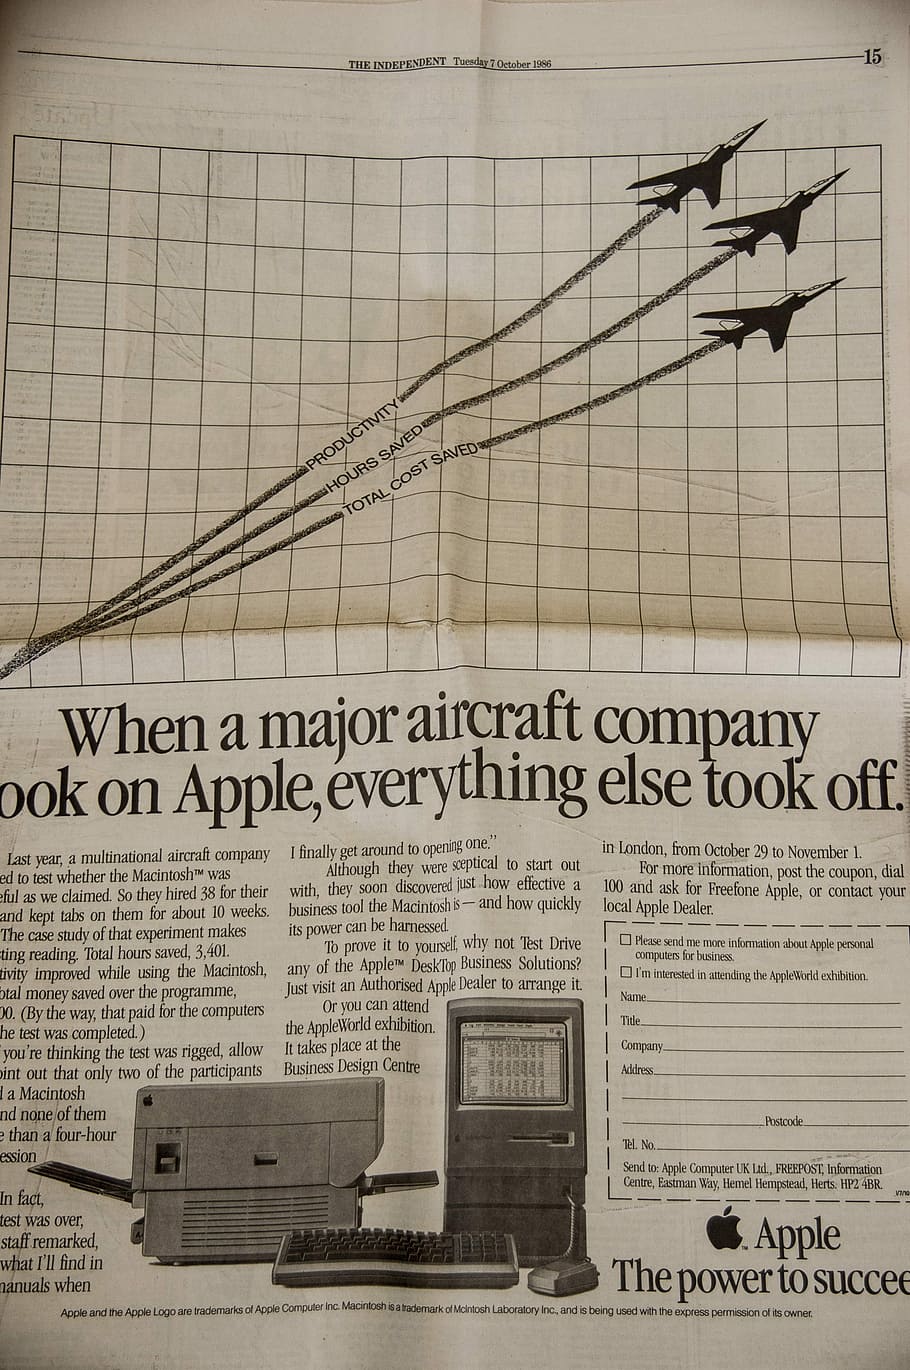 Periódico, anuncio, vintage, manzana, marca, 1986, británico, computadora, ninguna gente, industria